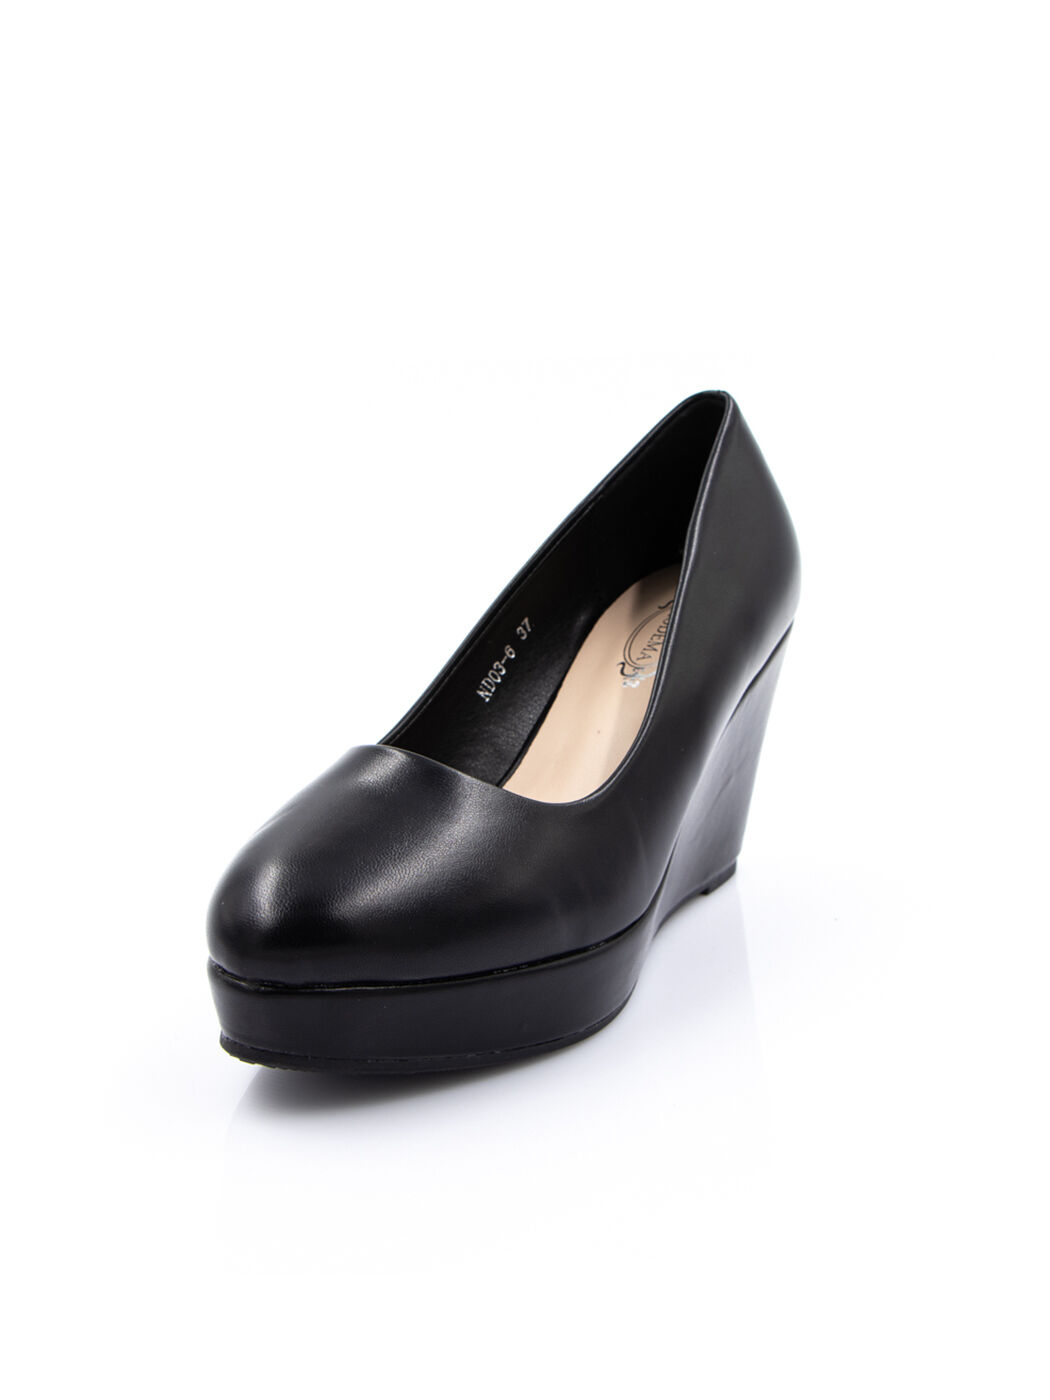 Туфли женские черные экокожа каблук устойчивый демисезон от производителя 6M вид 0